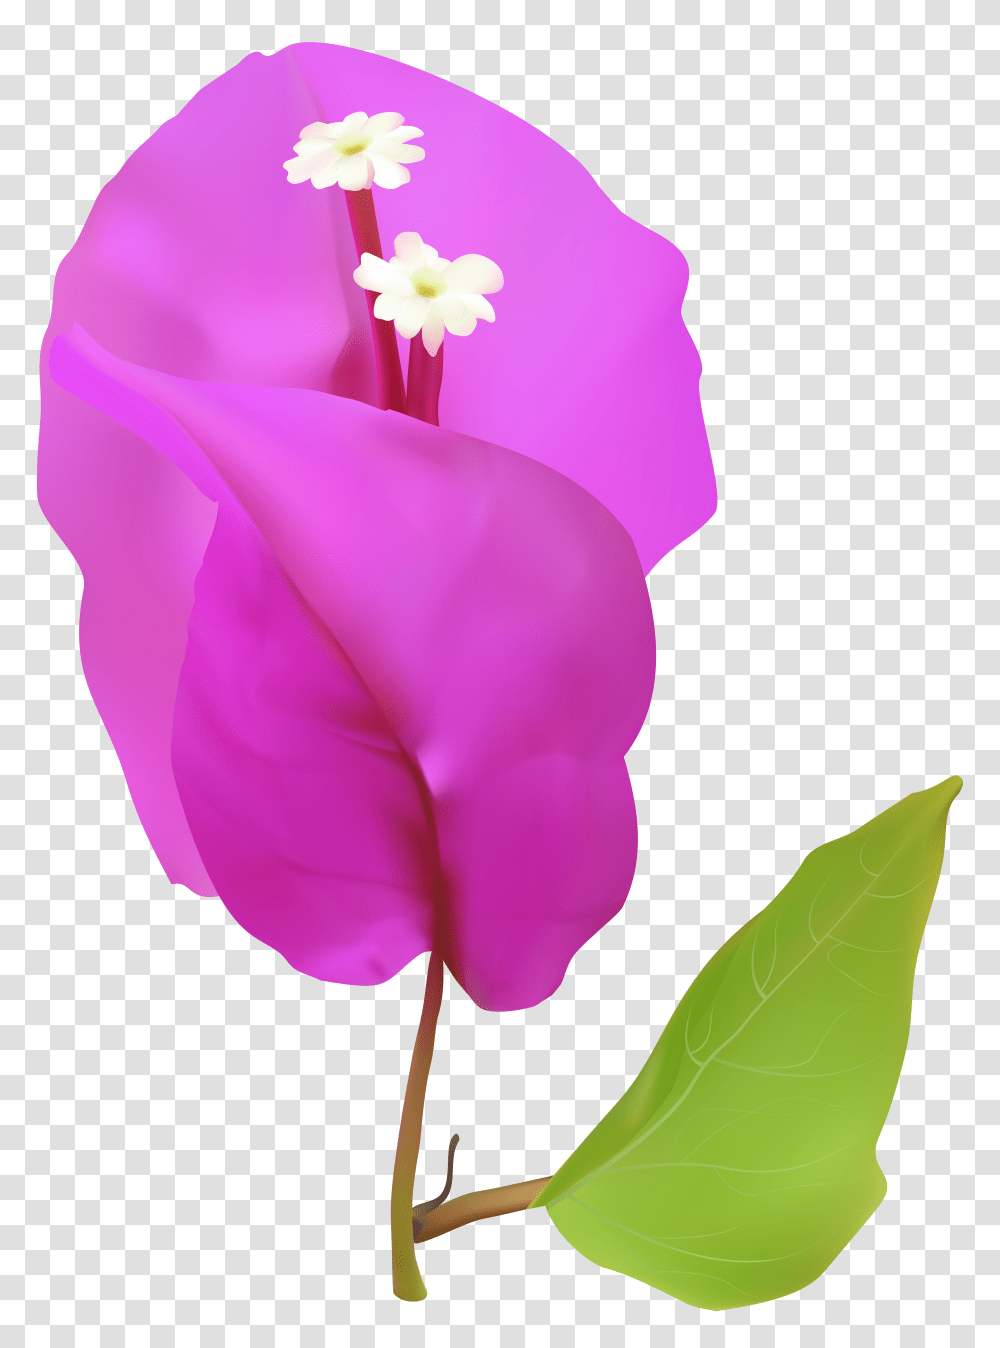 Spring Tree Flower Clip Art Transparent Png